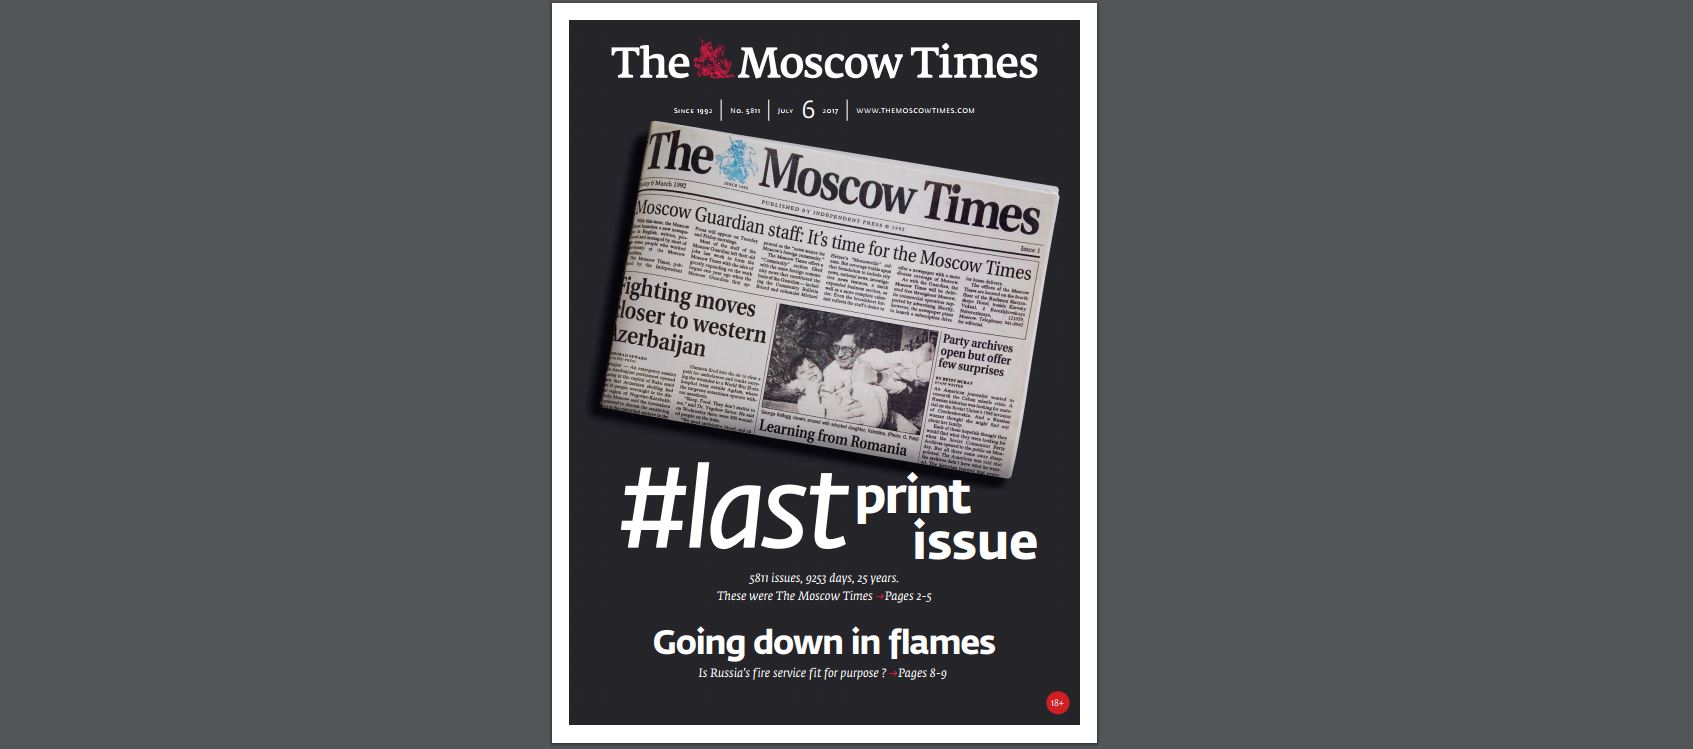 The Moscow Times se despide de su versión impresa – N+